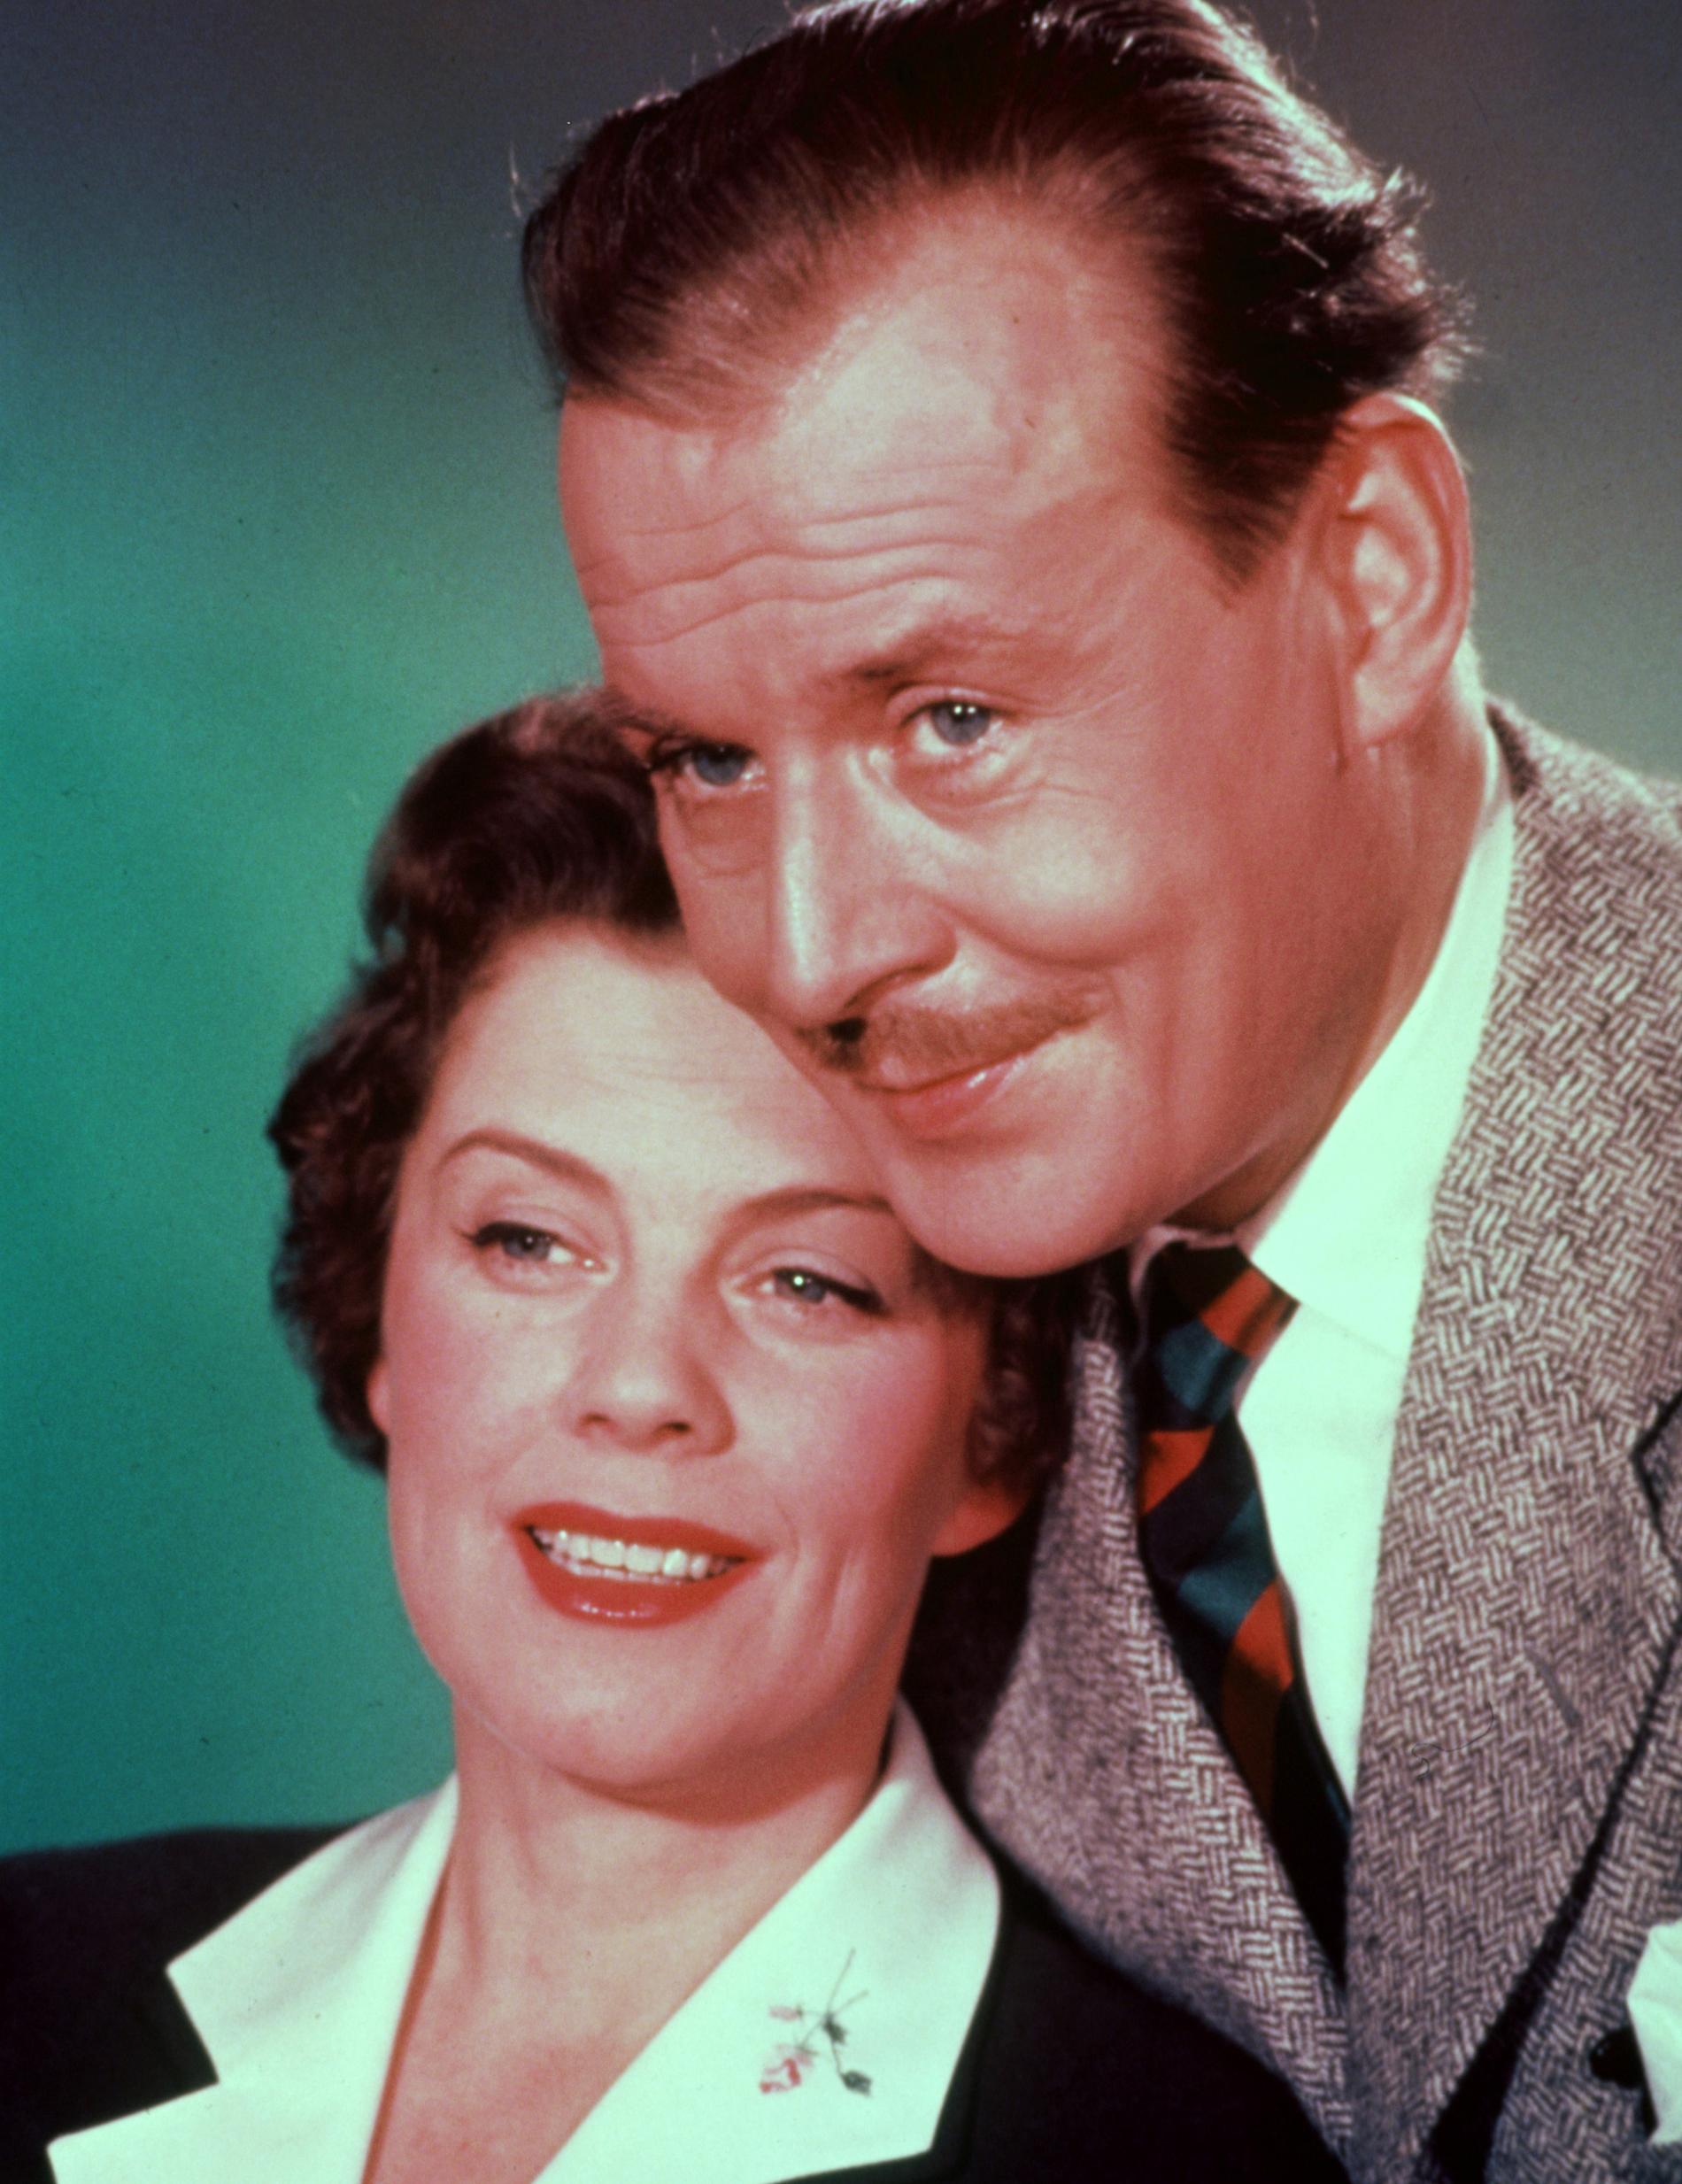 1957 Hasse Ekman regisserade inte bara. I hans film ”Med glorian på sned” hade Ekman en av filmens roller och fick då själv spela mot Sickan.